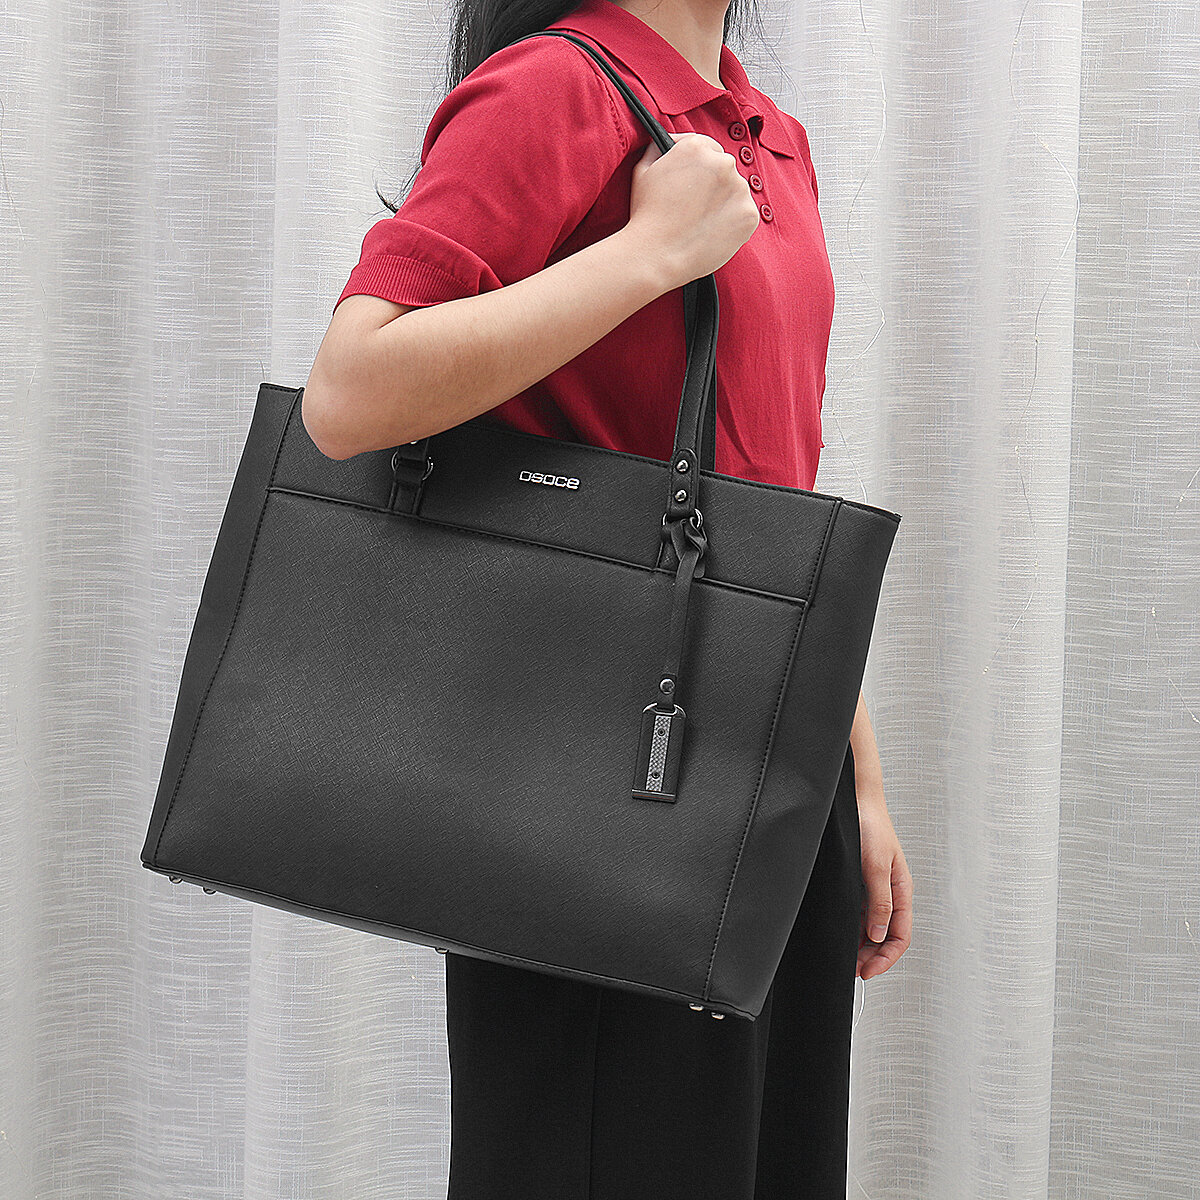 21inch-Laptop-Bag-Business-Shoulder-Bag-Casual-Handbag-1707880-2